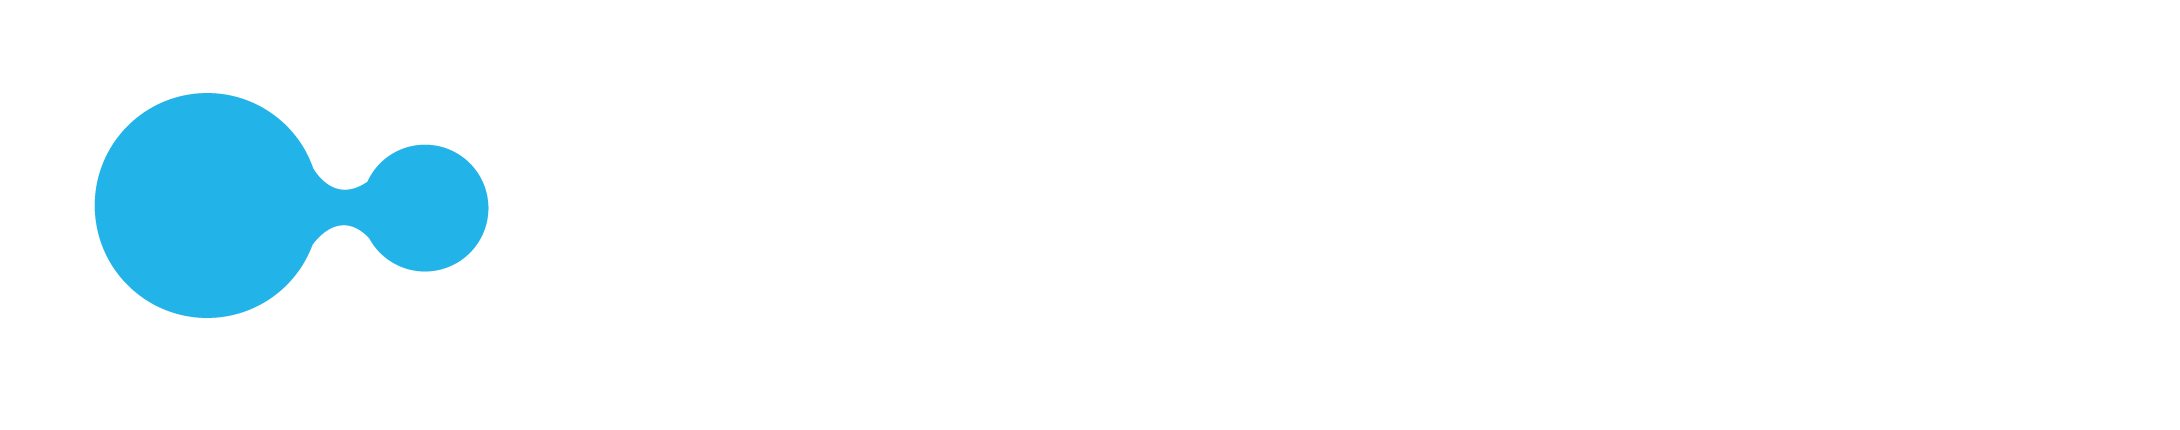 Chimaera GmbH